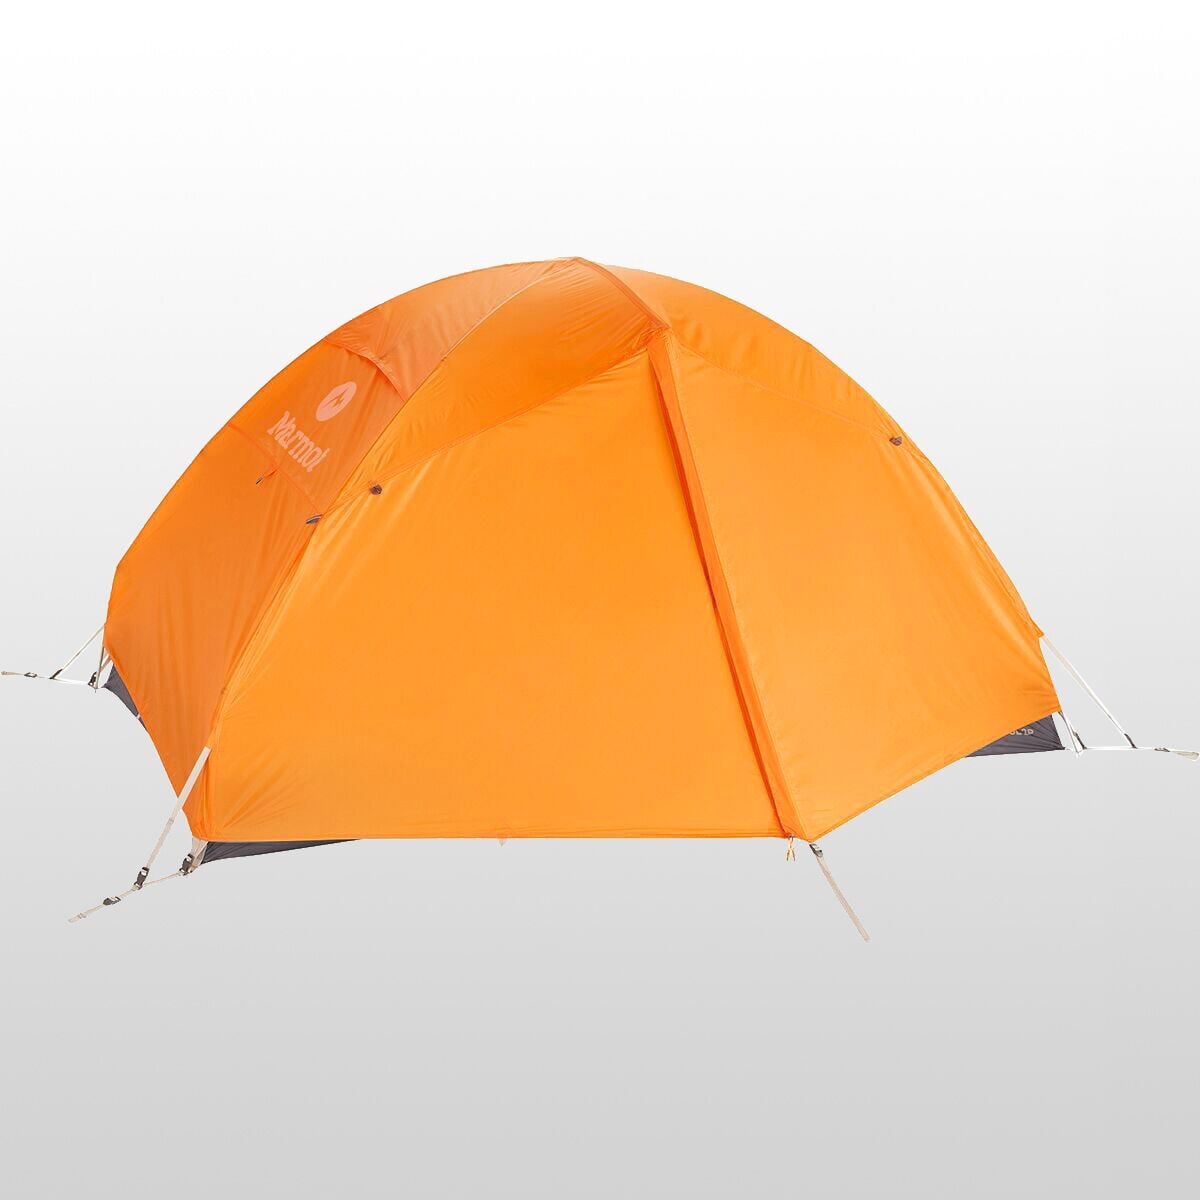 마모트 Marmot Fortress UL Tent: 2-Person 3-Season - Hike & Camp